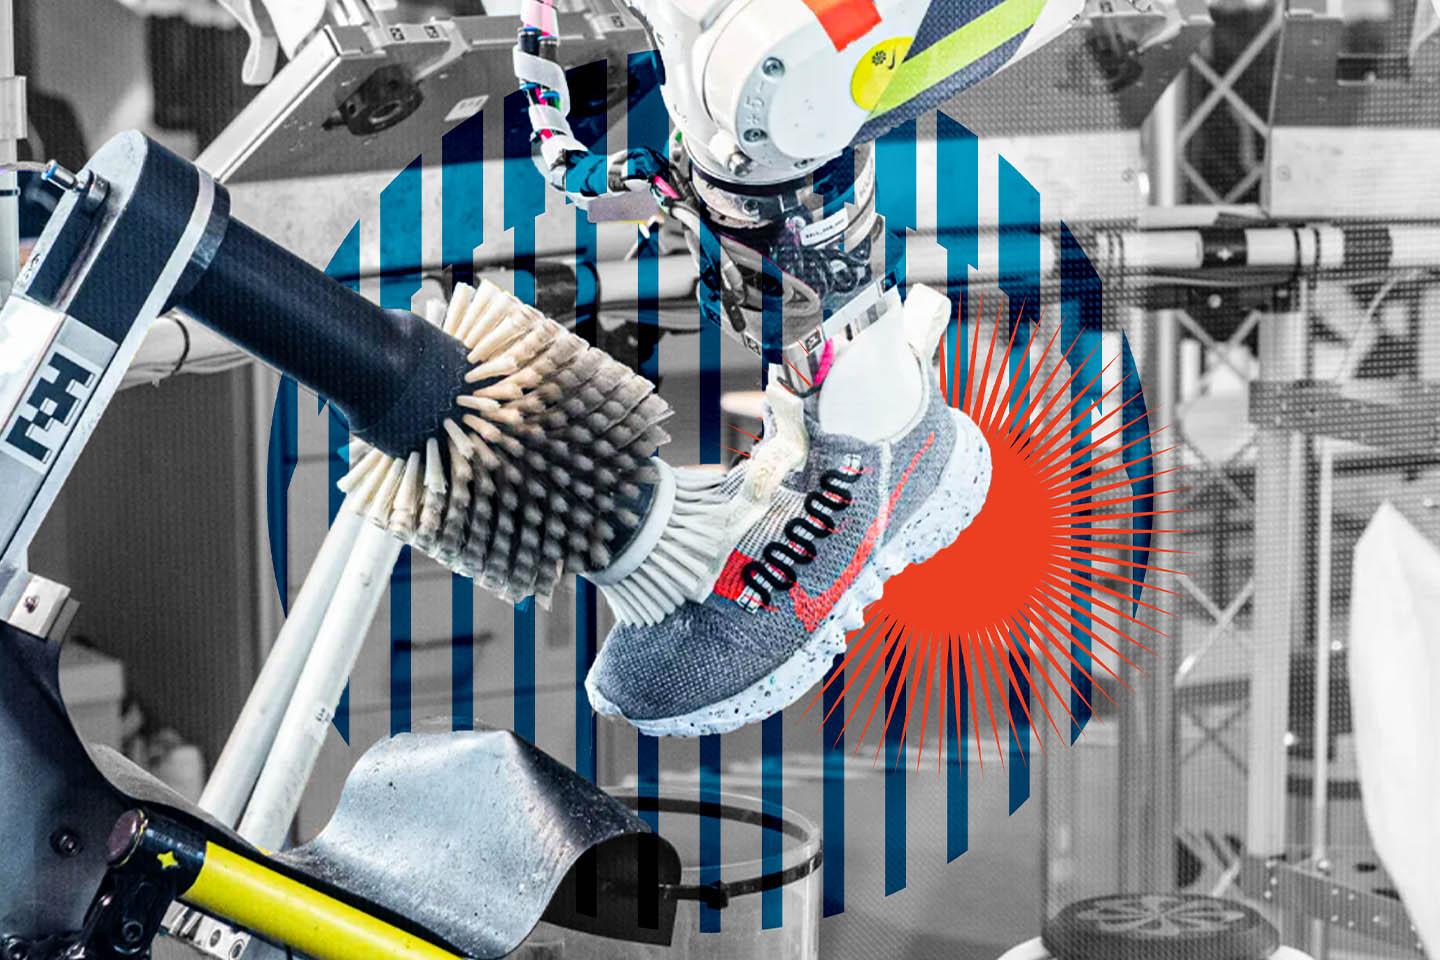 Nike-clean-and-repair-robot-SPACEBAR-Main